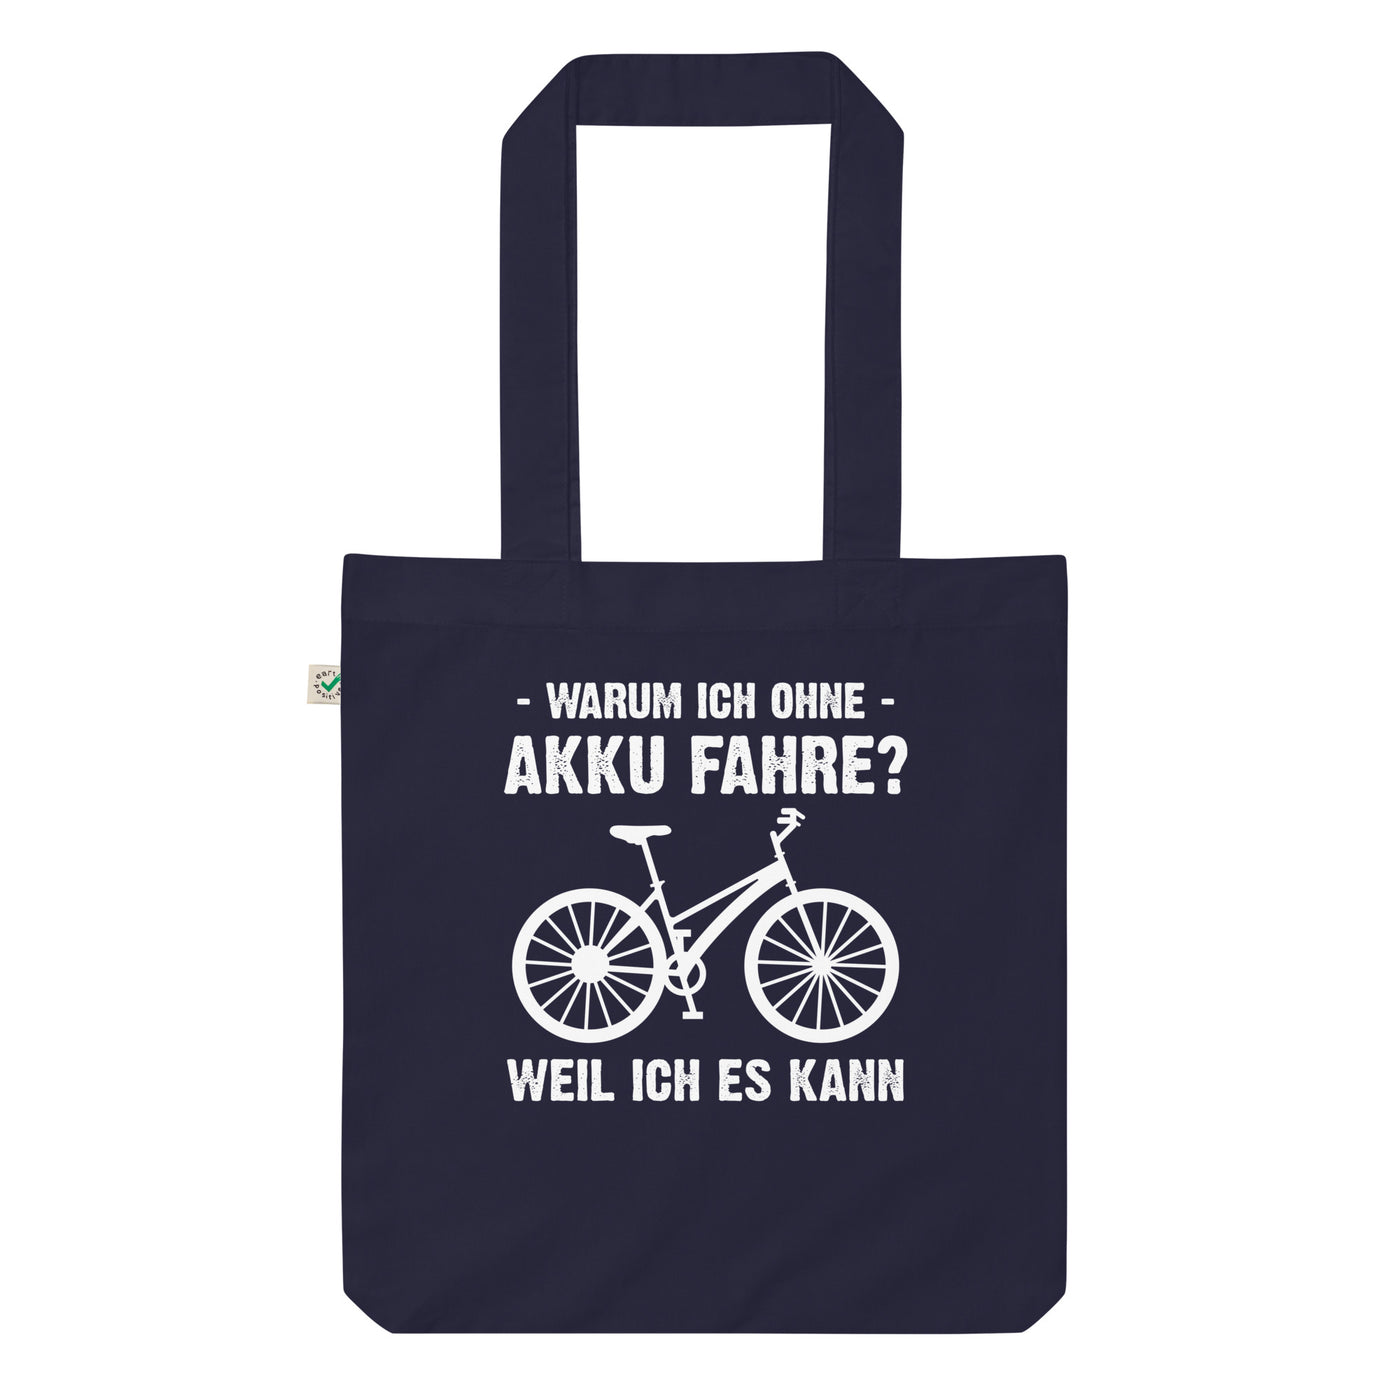 Warum Ich Ohne Akku Fahre Weil Ich Es Kann - Organic Einkaufstasche fahrrad Navy